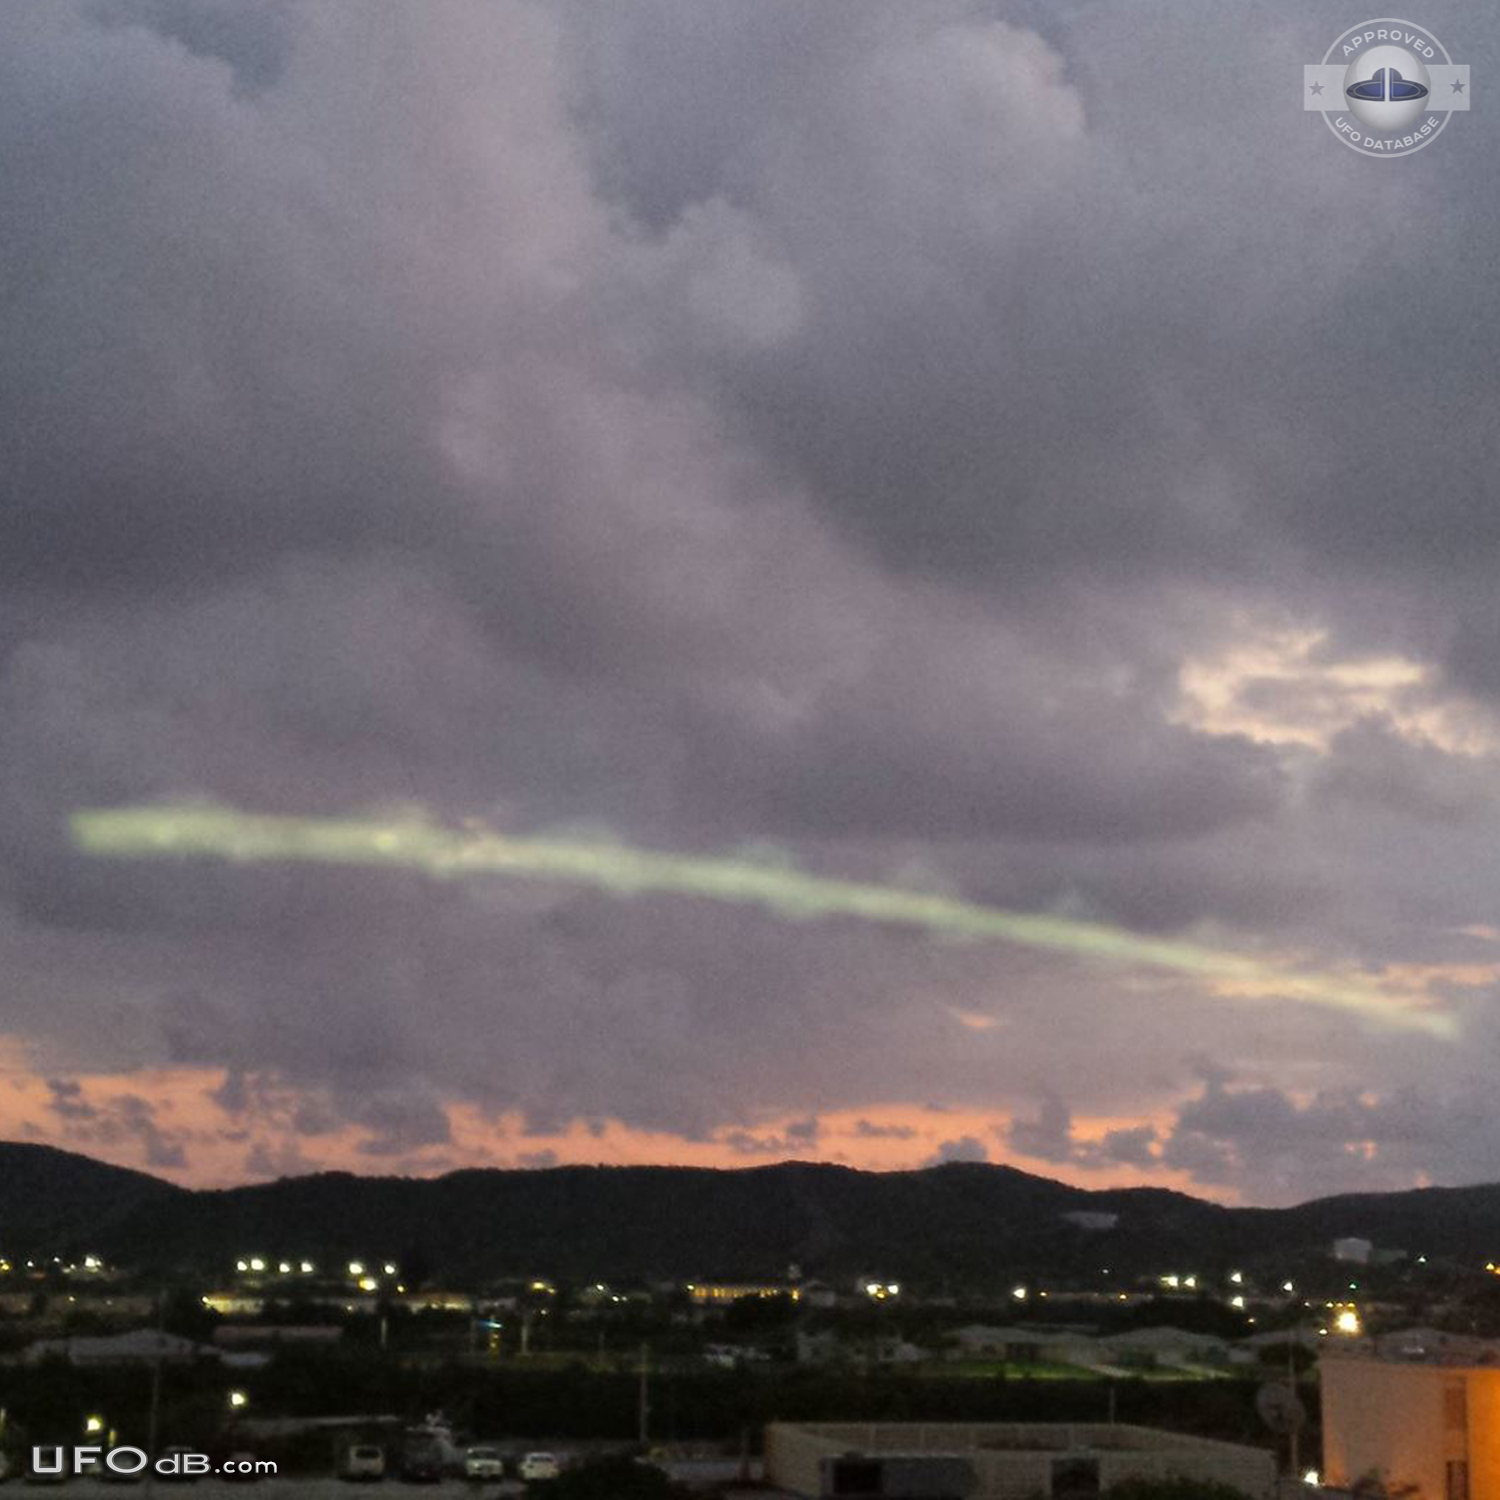 Strange UFO in the sky near Guantanamo prison, Cuba in 2015 UFO Picture #618-2